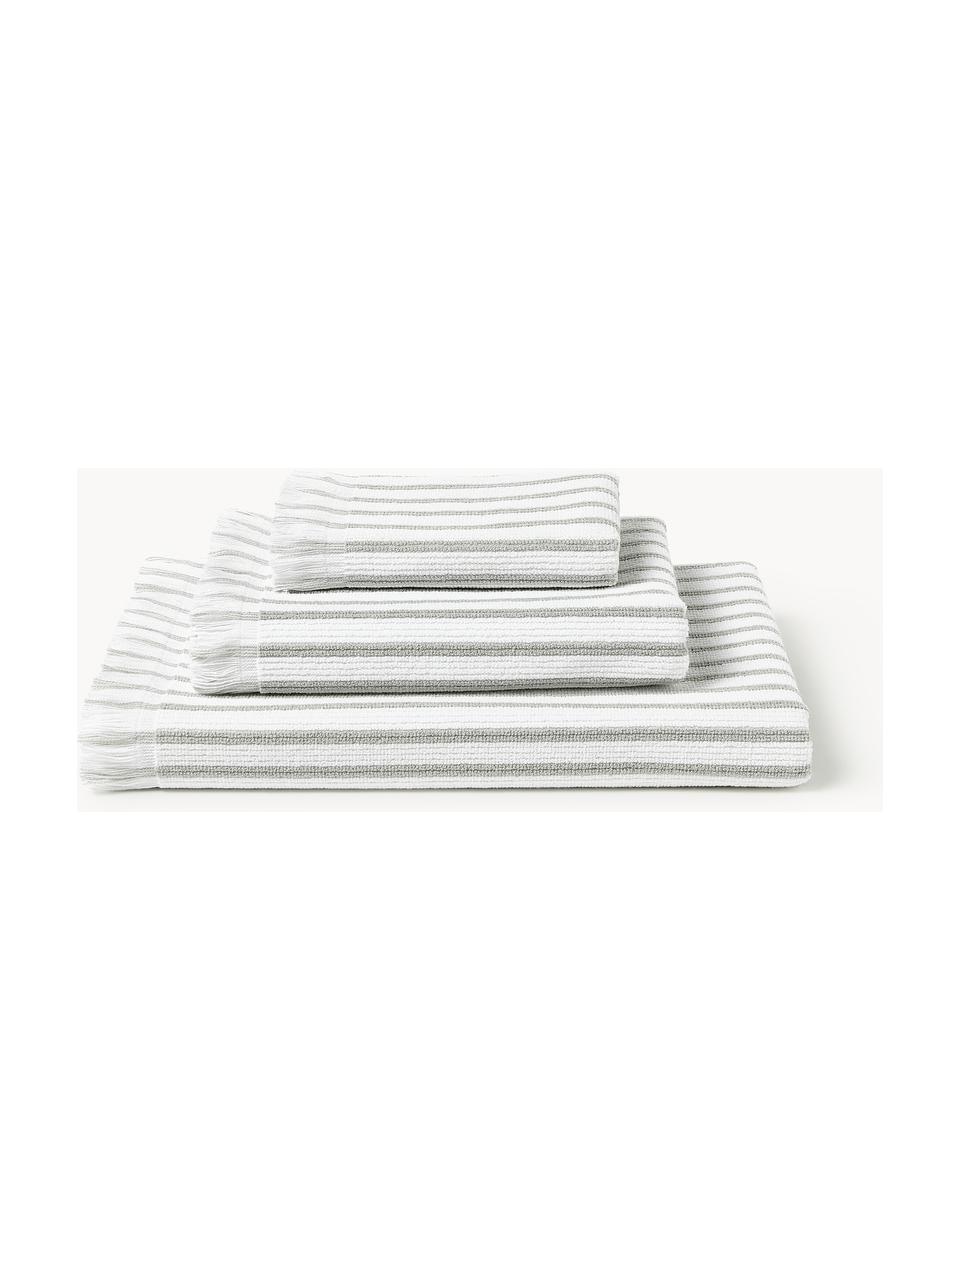 Sada ručníků Irma, různé velikosti sady, Bílá, světle šedá, 4dílná sada (ručník a osuška)